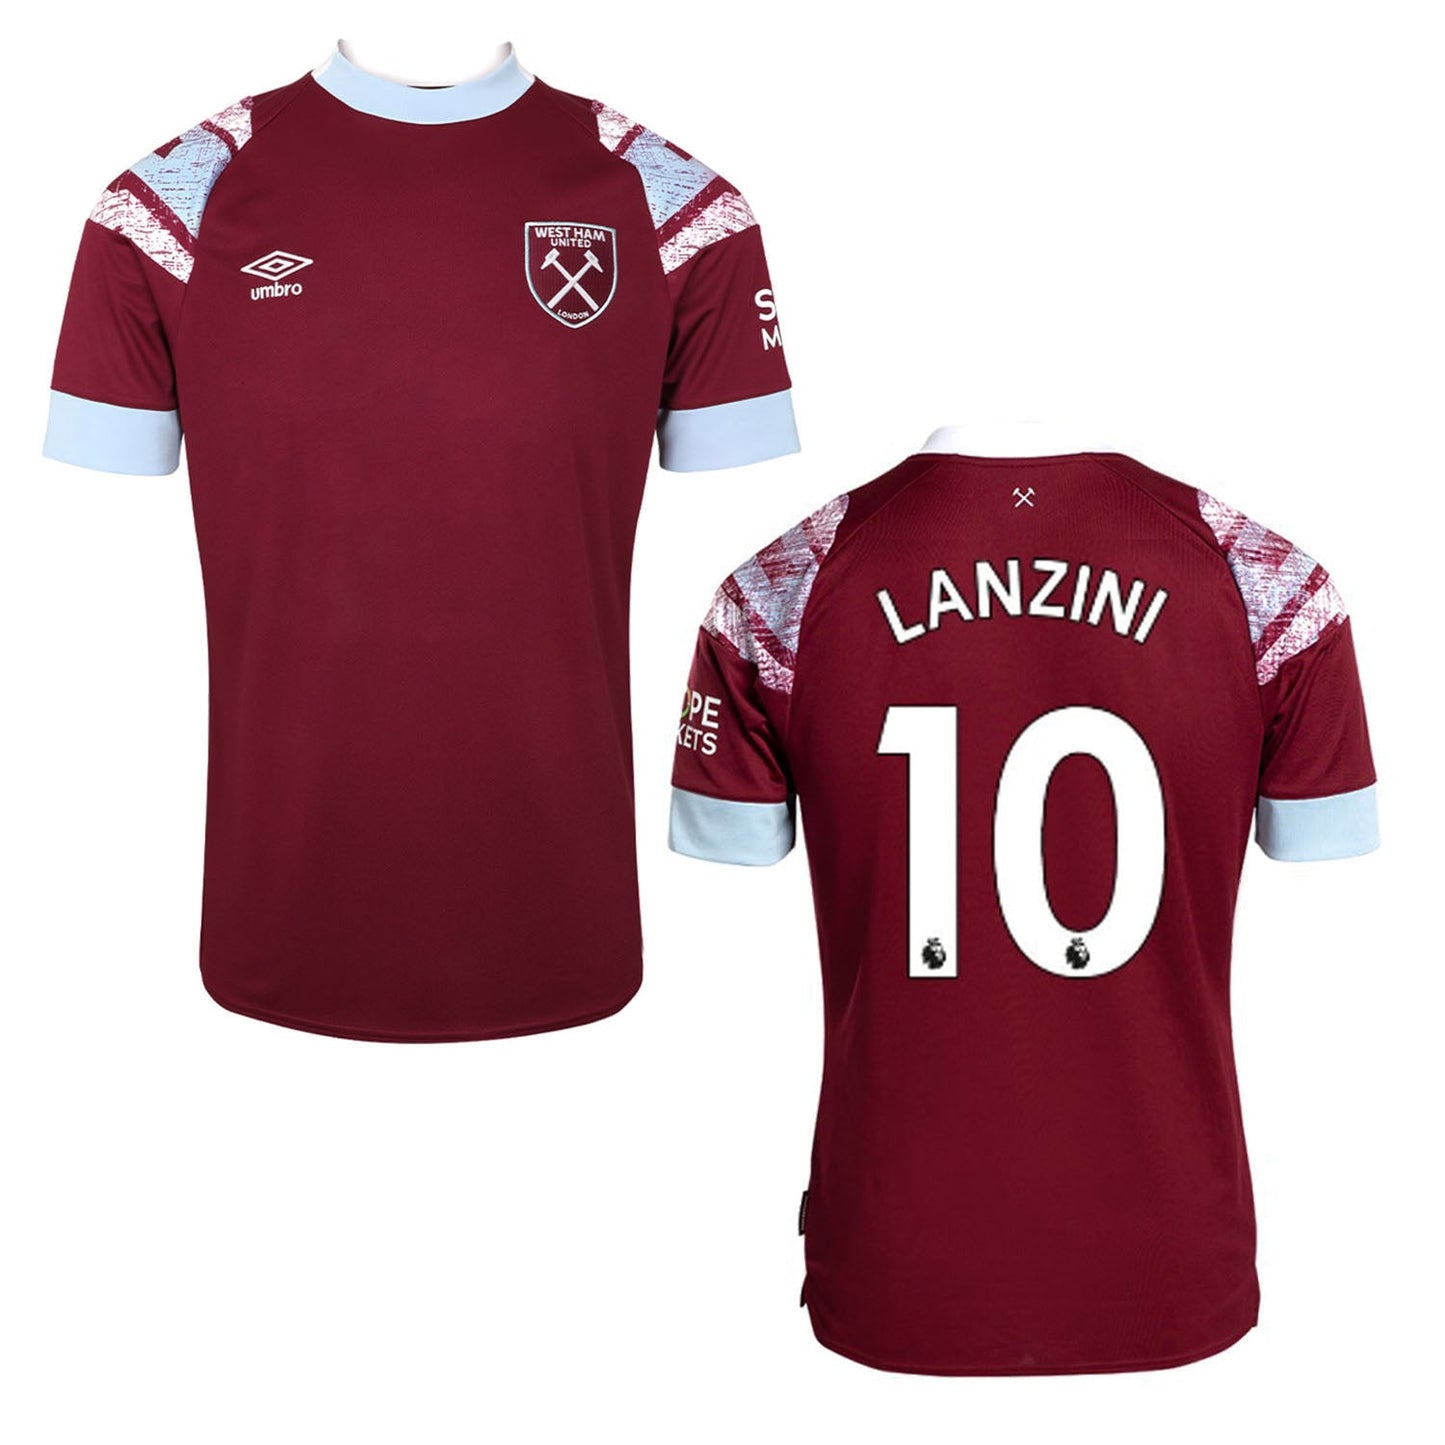 Manuel Lanzini West Ham 10 Jersey